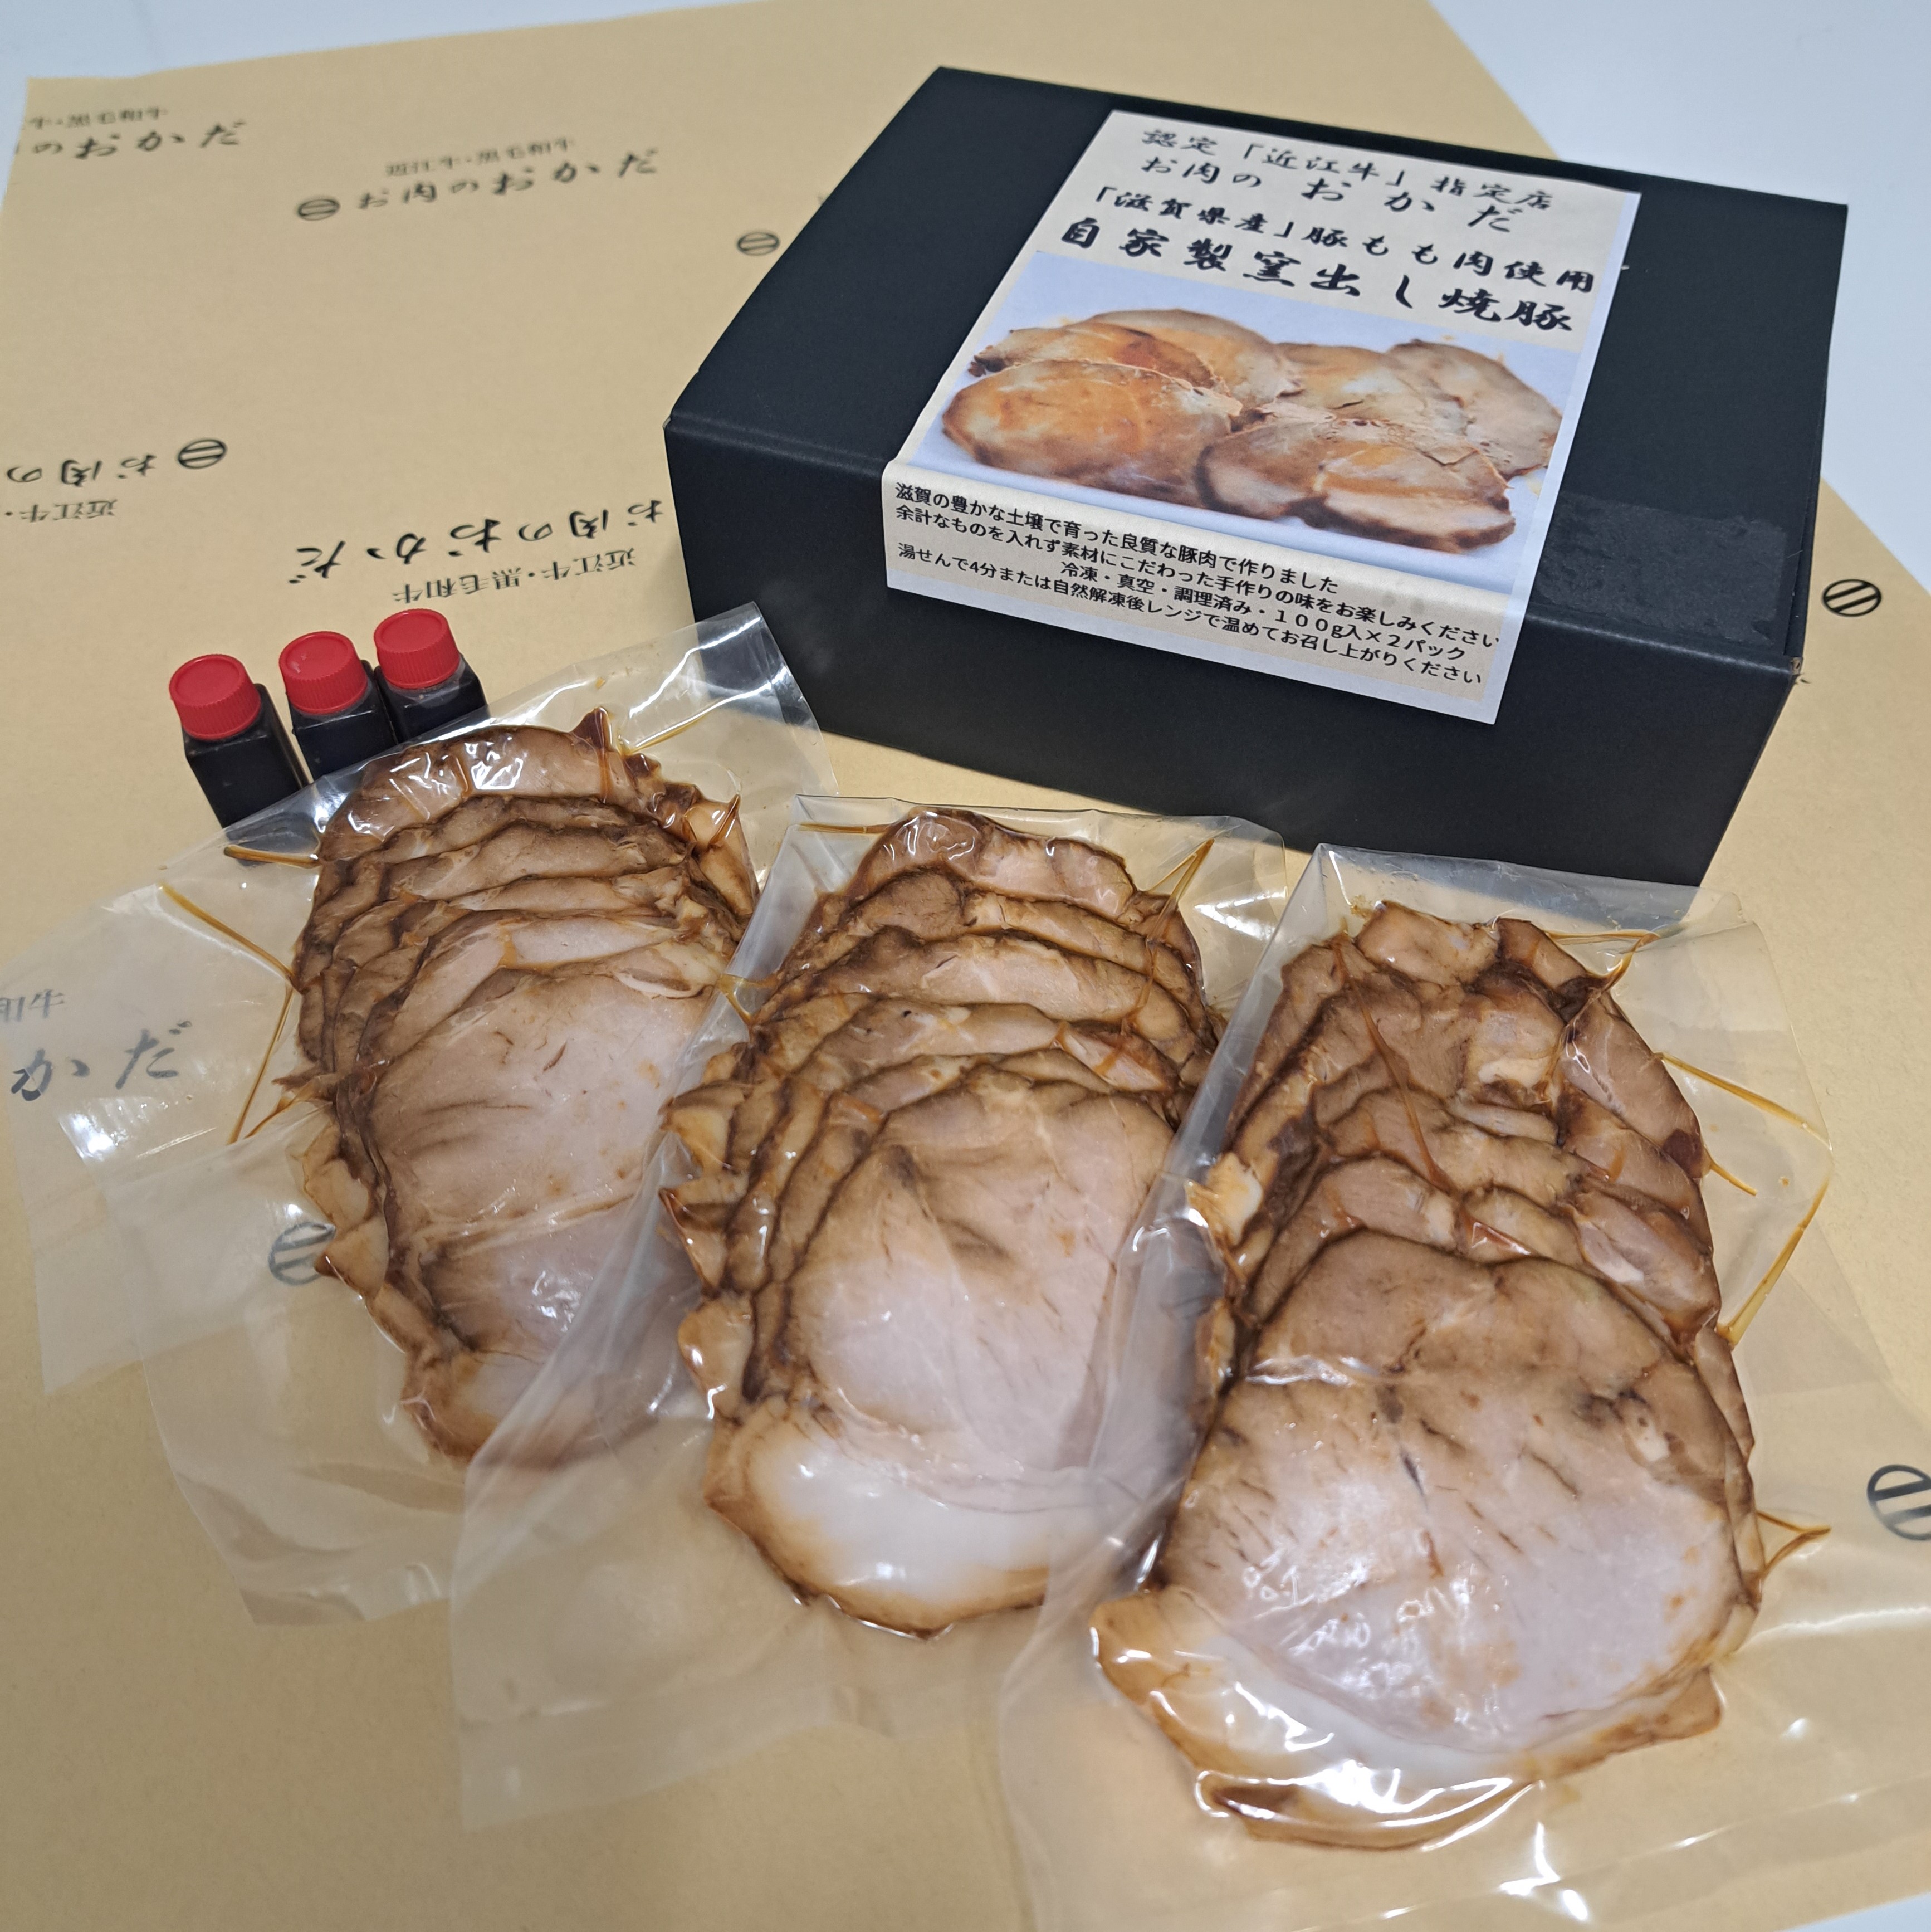 【お肉のおかだ】「滋賀県産」豚もも肉使用 自家製窯出し焼豚1パック100g入×3パック（化粧箱入り）